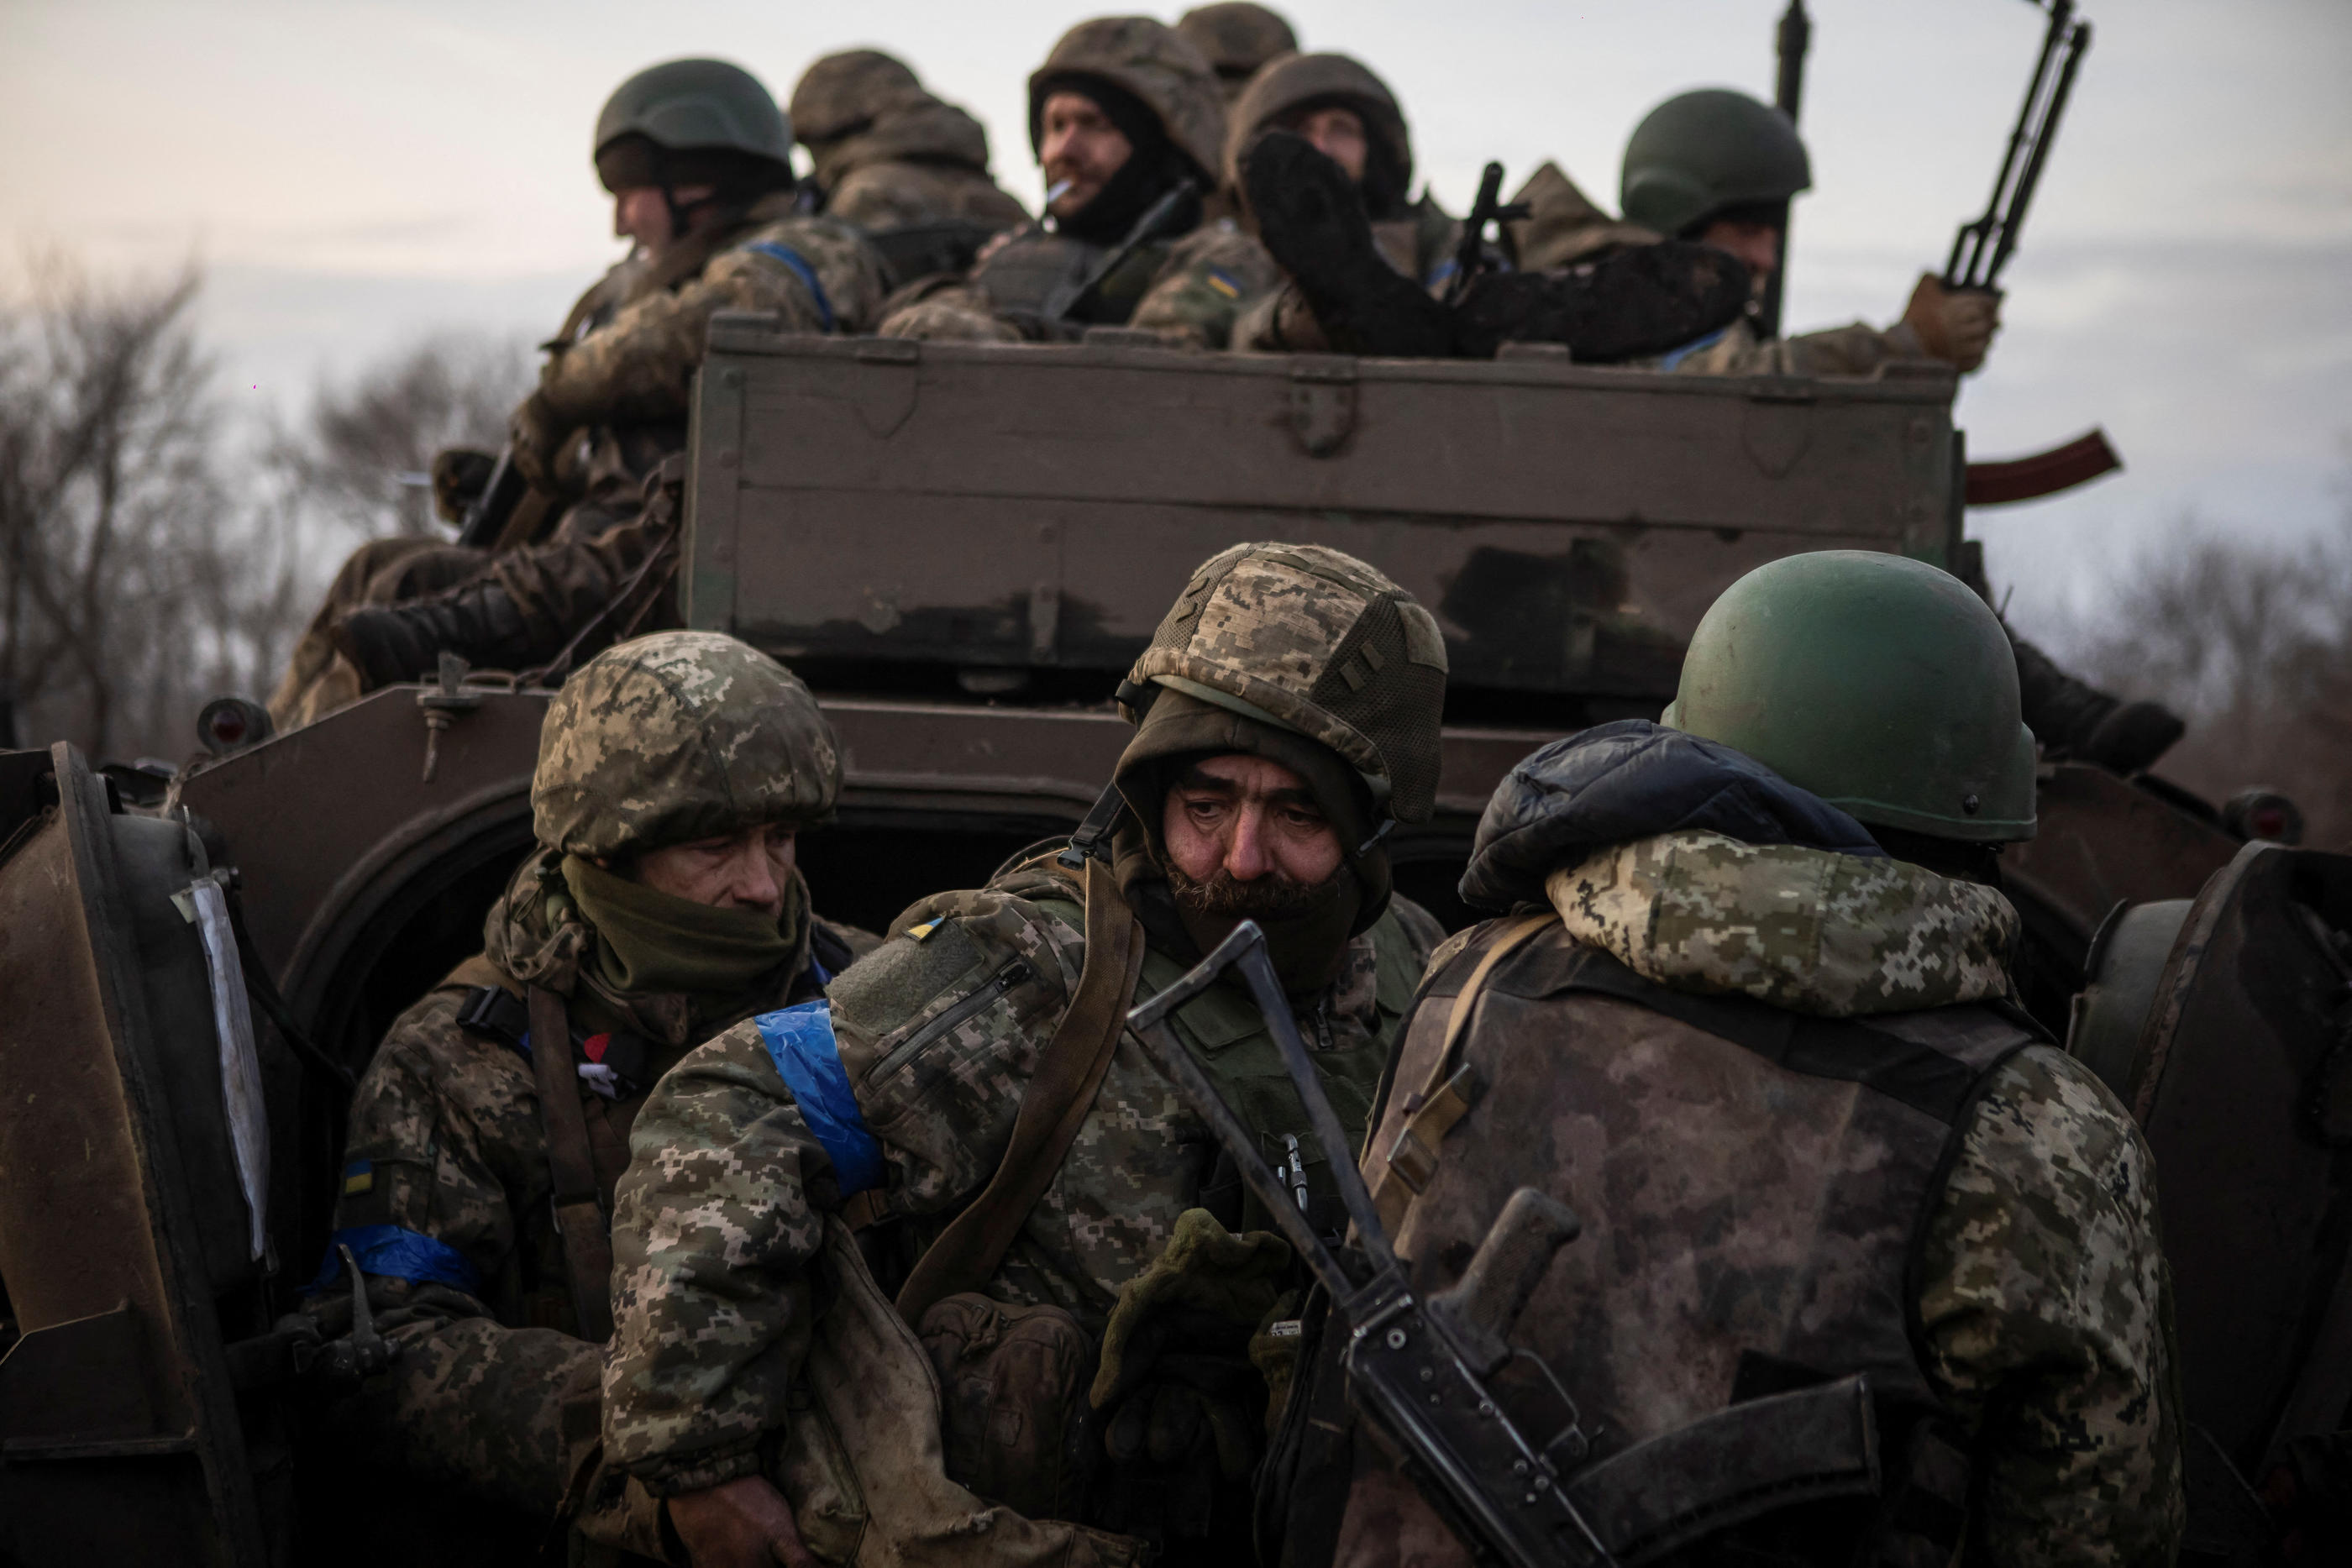 Bakhmout est l’épicentre de la guerre.  Les militaires ukrainiens défendent cette bourgade que les forces de Poutine tentent de prendre depuis juillet. REUTERS/Yevhenii Zavhorodnii